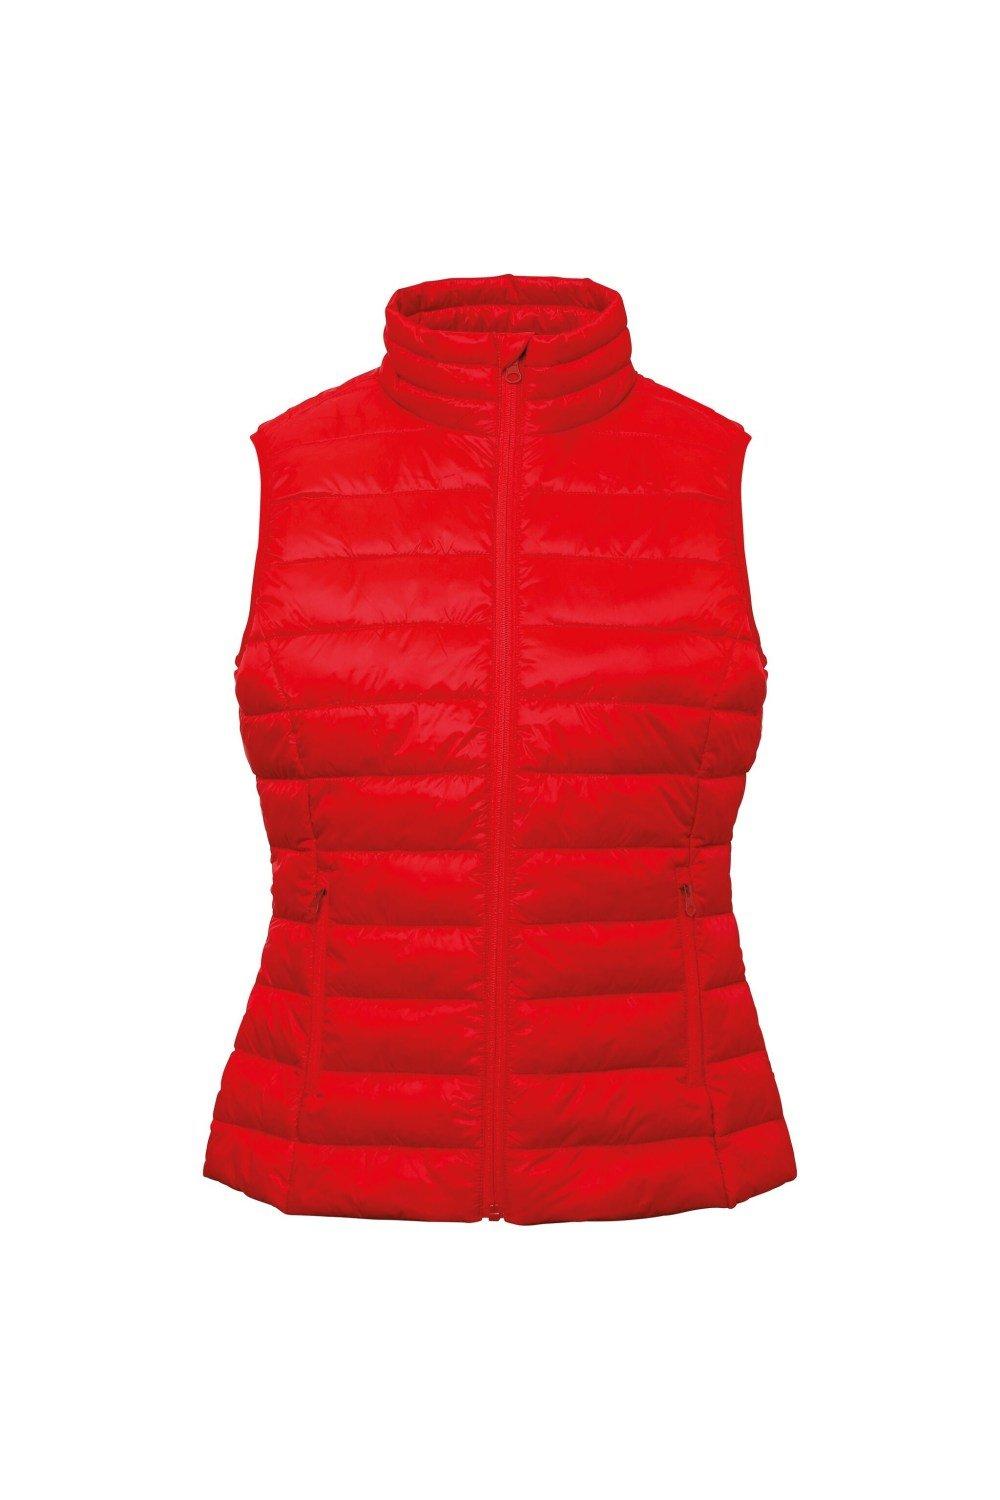 Утепленный жилет без рукавов Terrain 2786, красный зимняя мужская куртка жилет из хлопка без рукавов мужское теплое пальто теплая подкладка мужской приталенный жилет